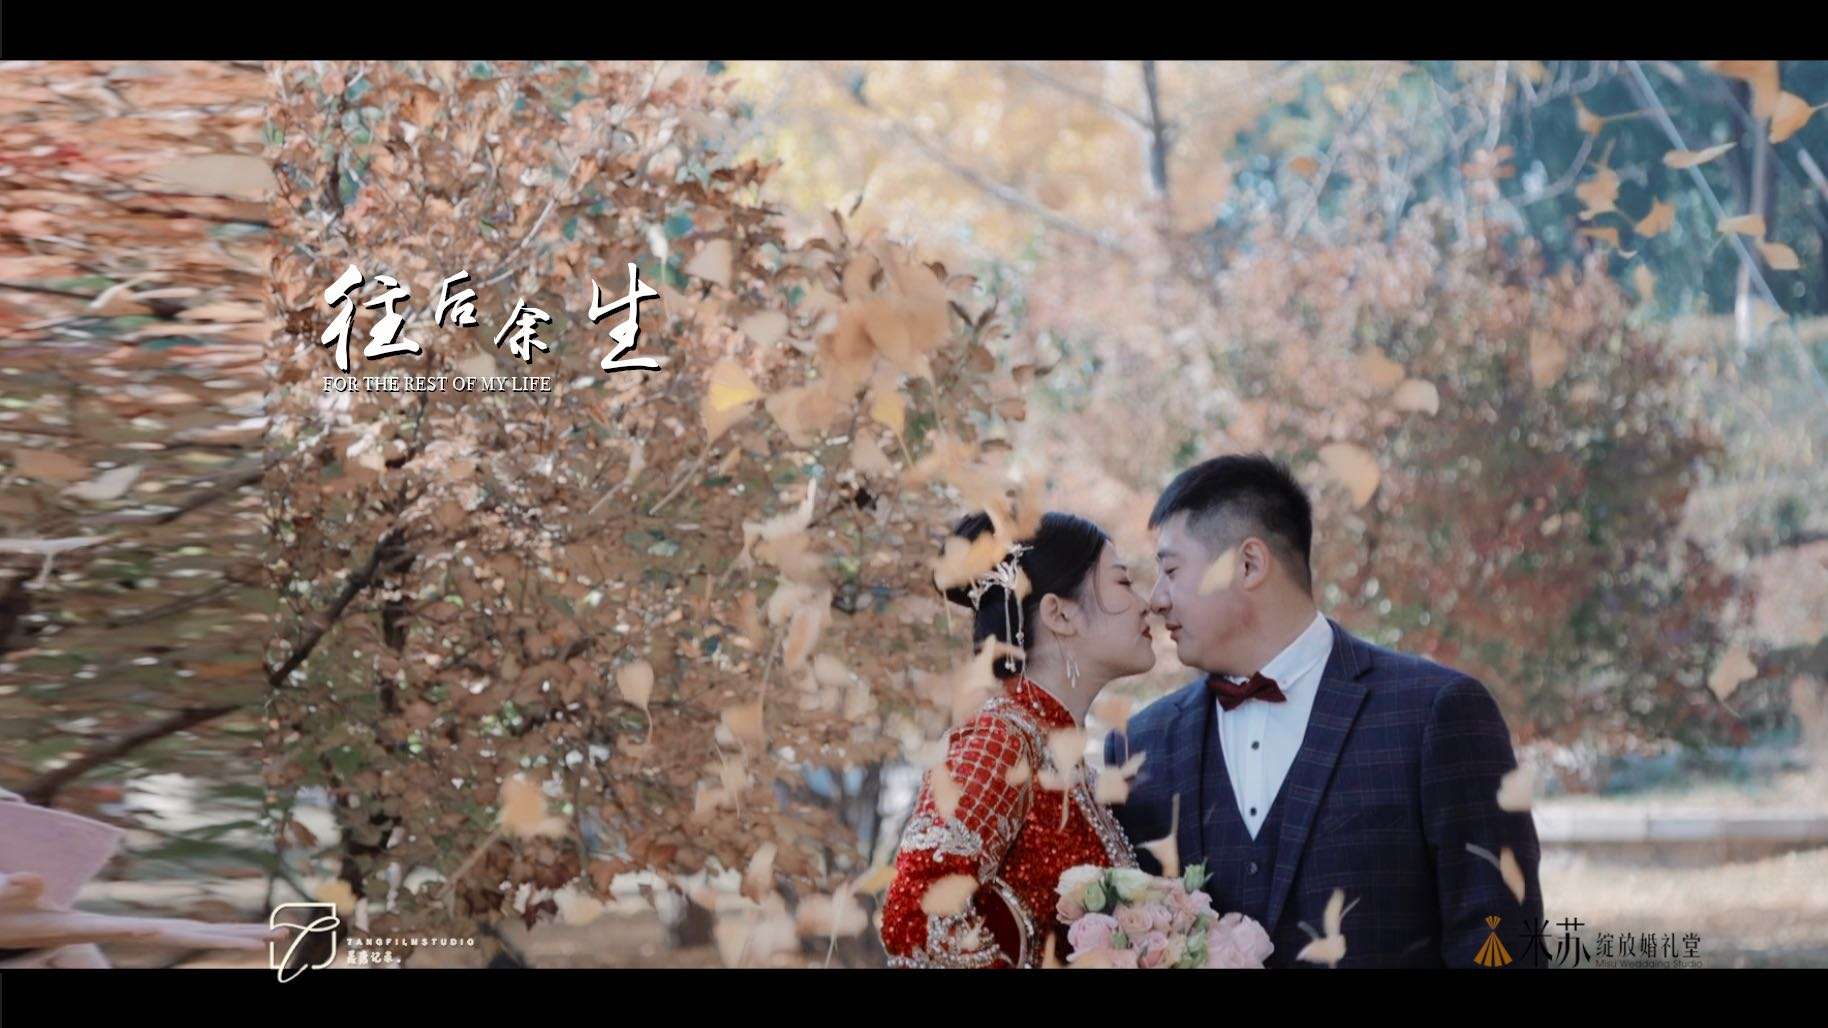 婚礼大电影《往后余生》-22.11.05